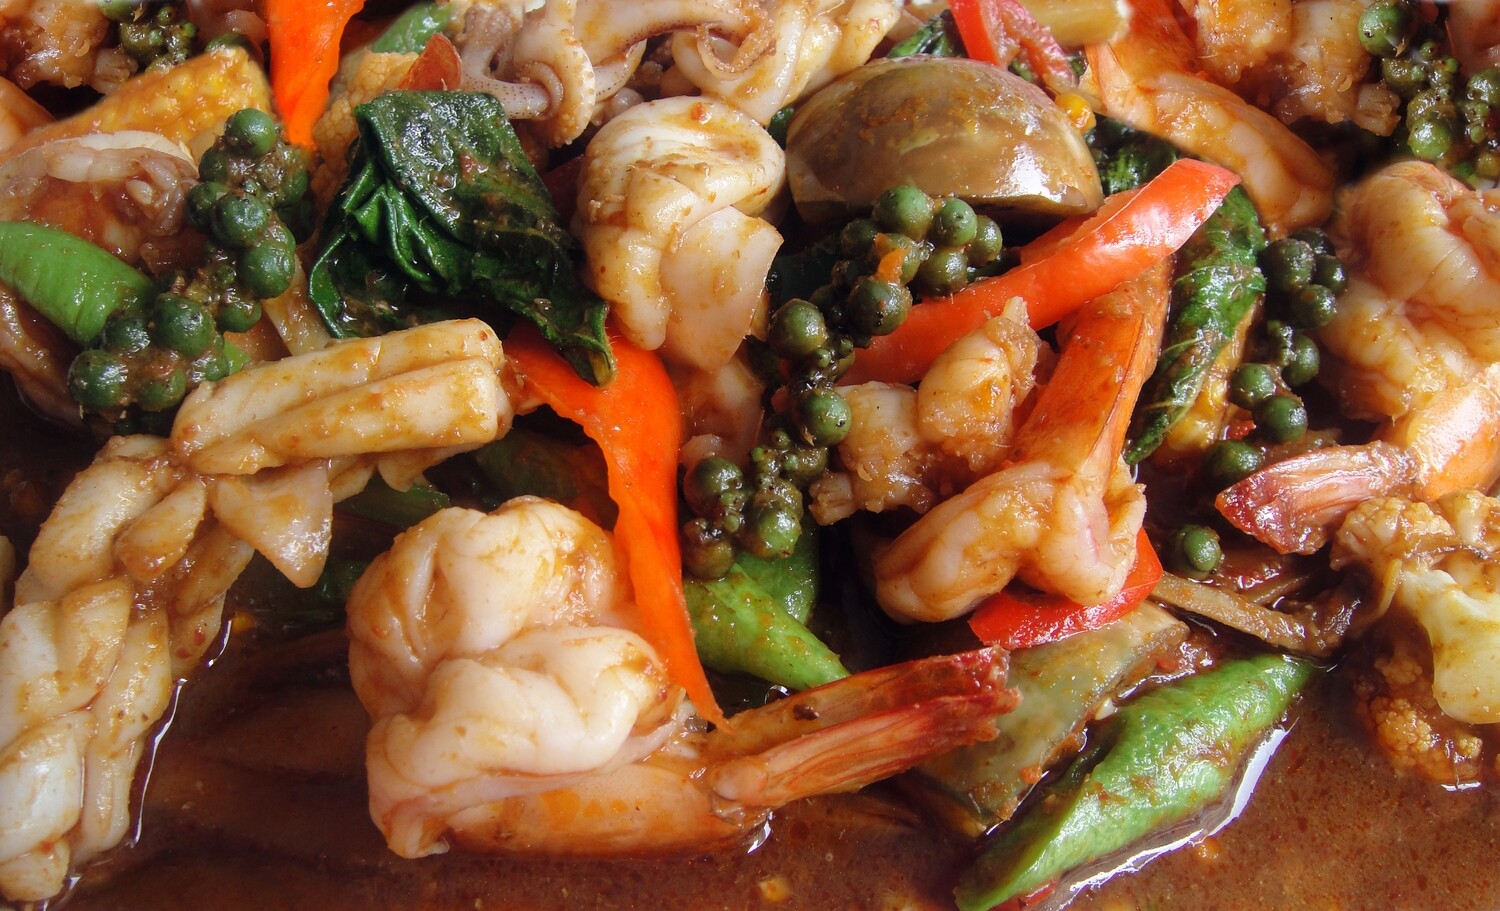 FRUITS DE MER
Har Ding
Légumes chinois aux
crevettes et noix d’acajou